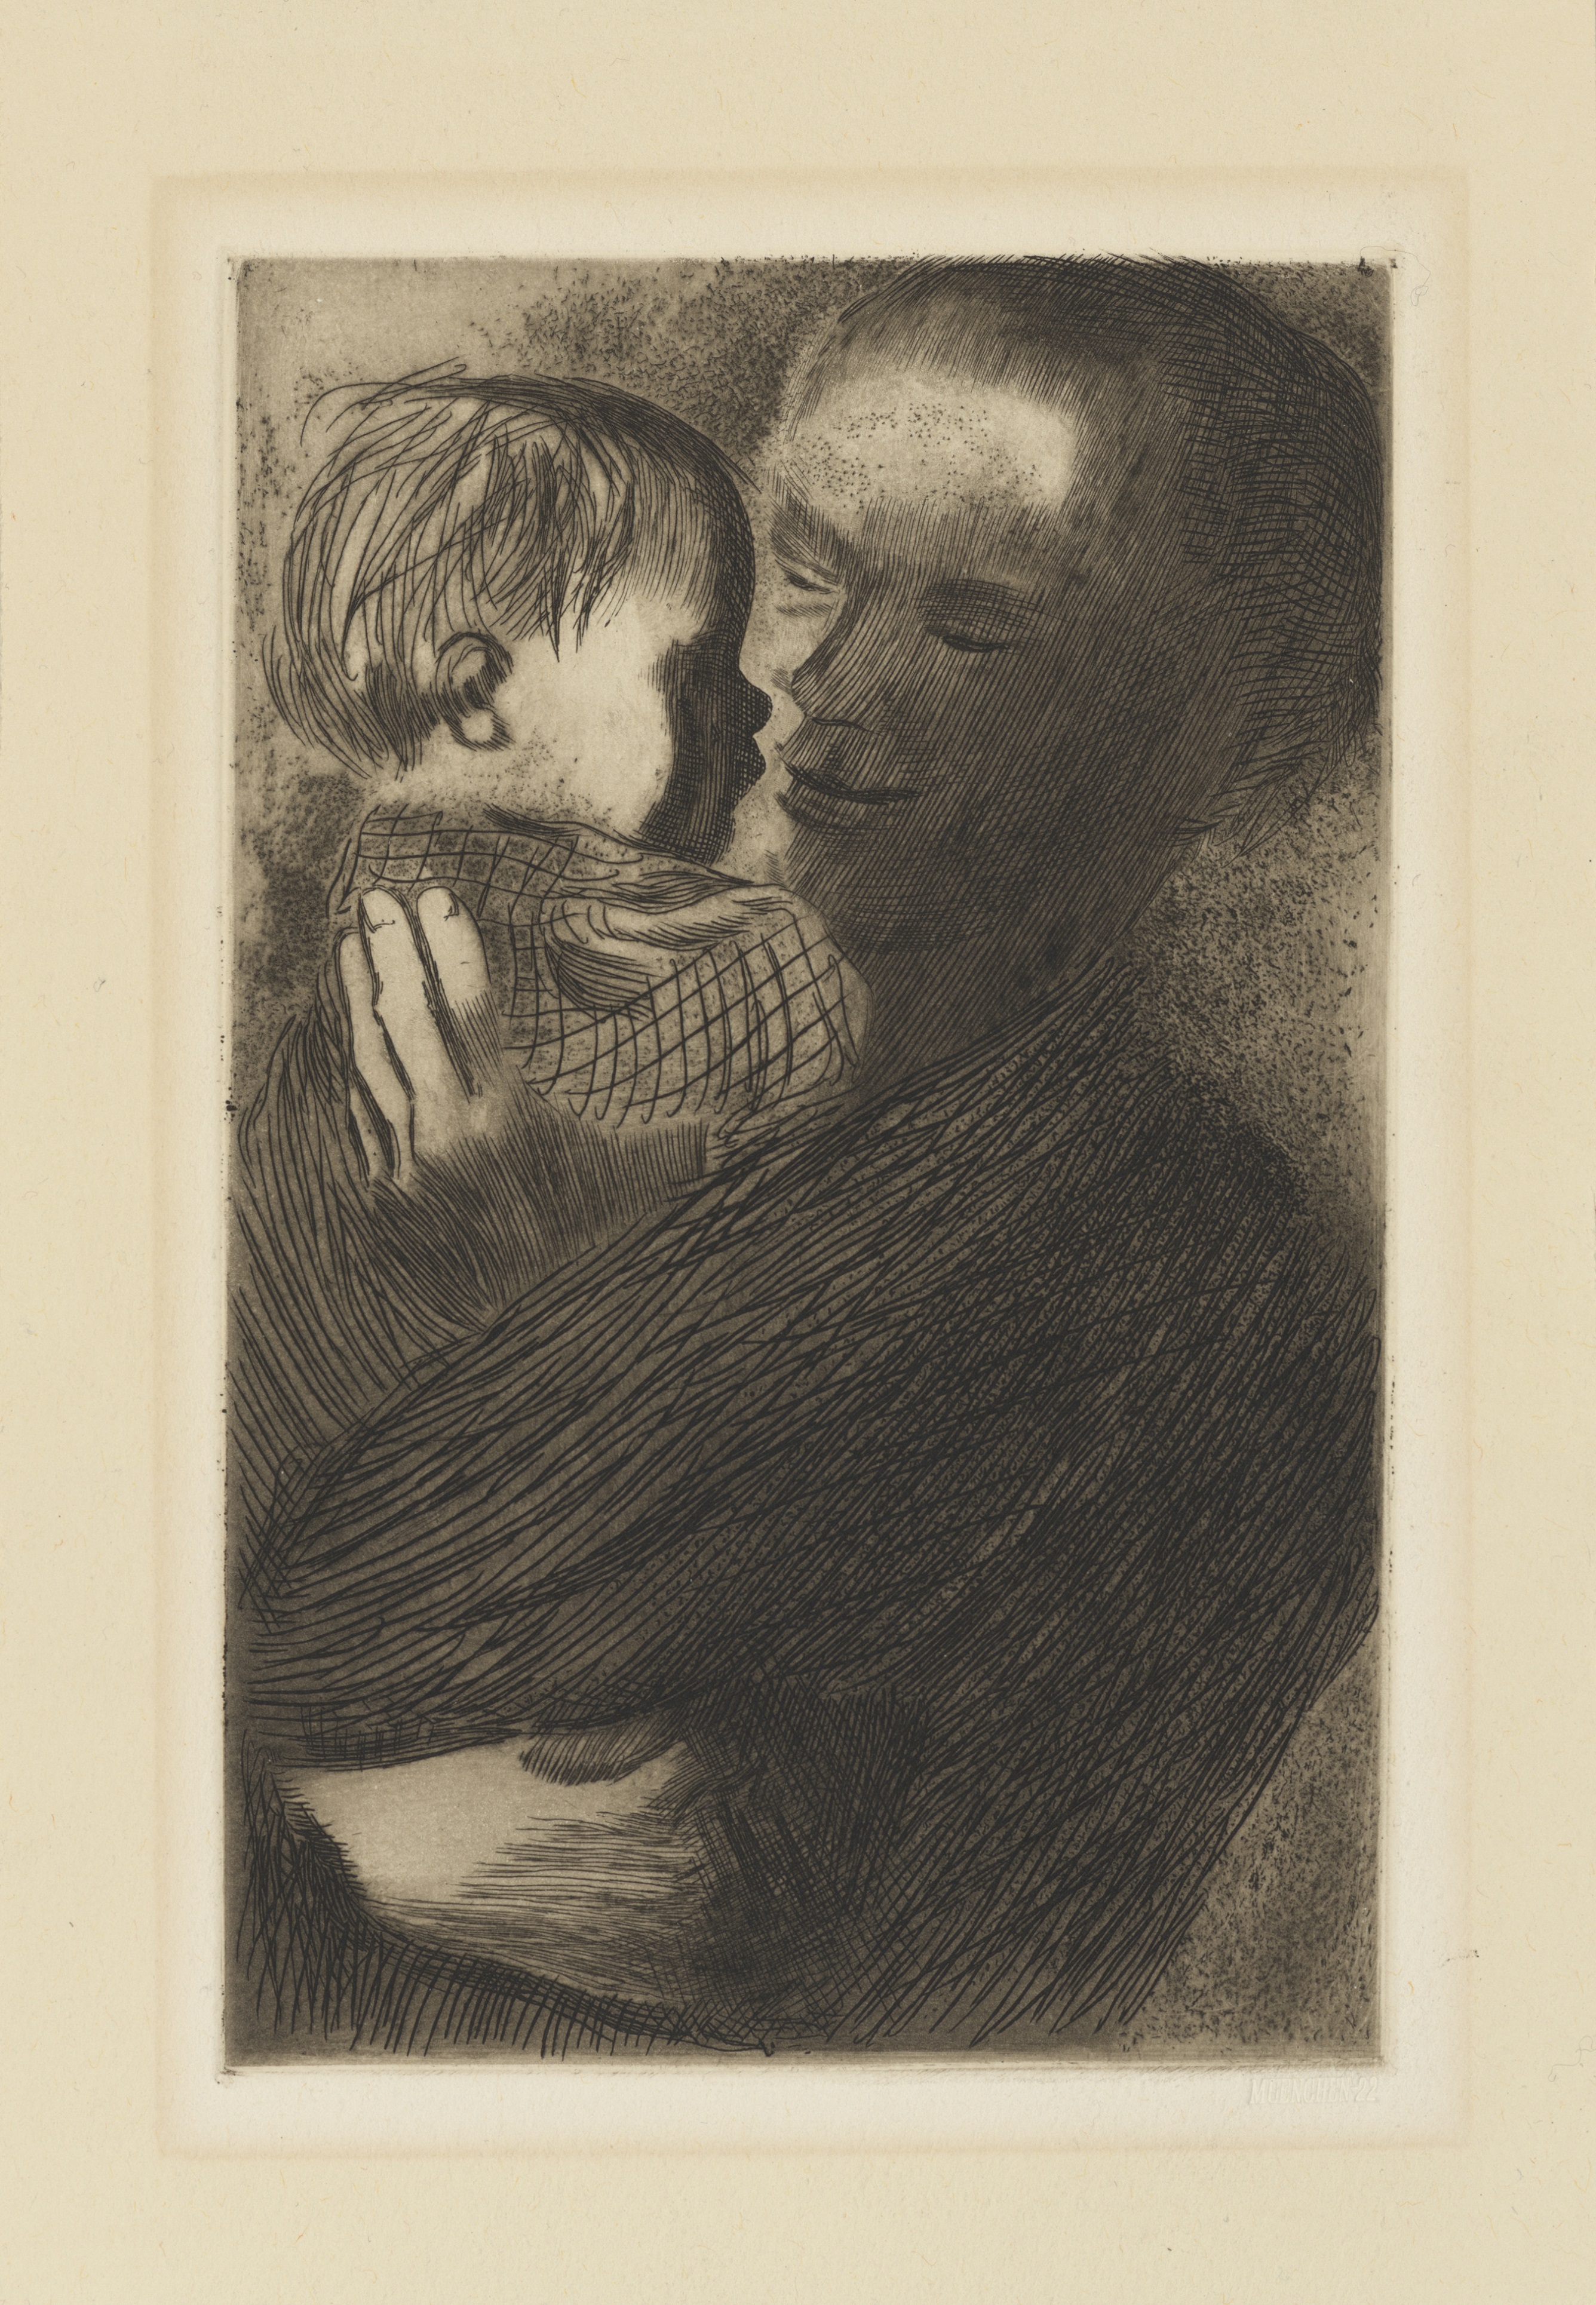 展览作品-修图-母亲怀中铜板蚀刻版画20×12.5cm1900-1949